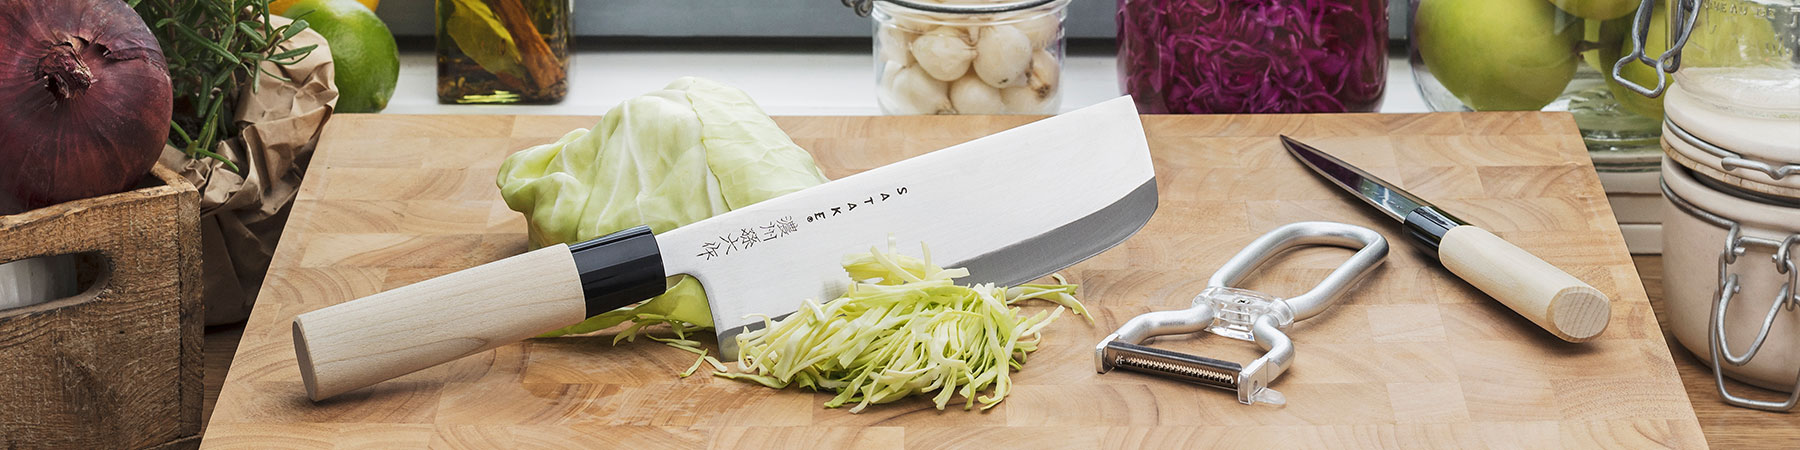 Satake kniver